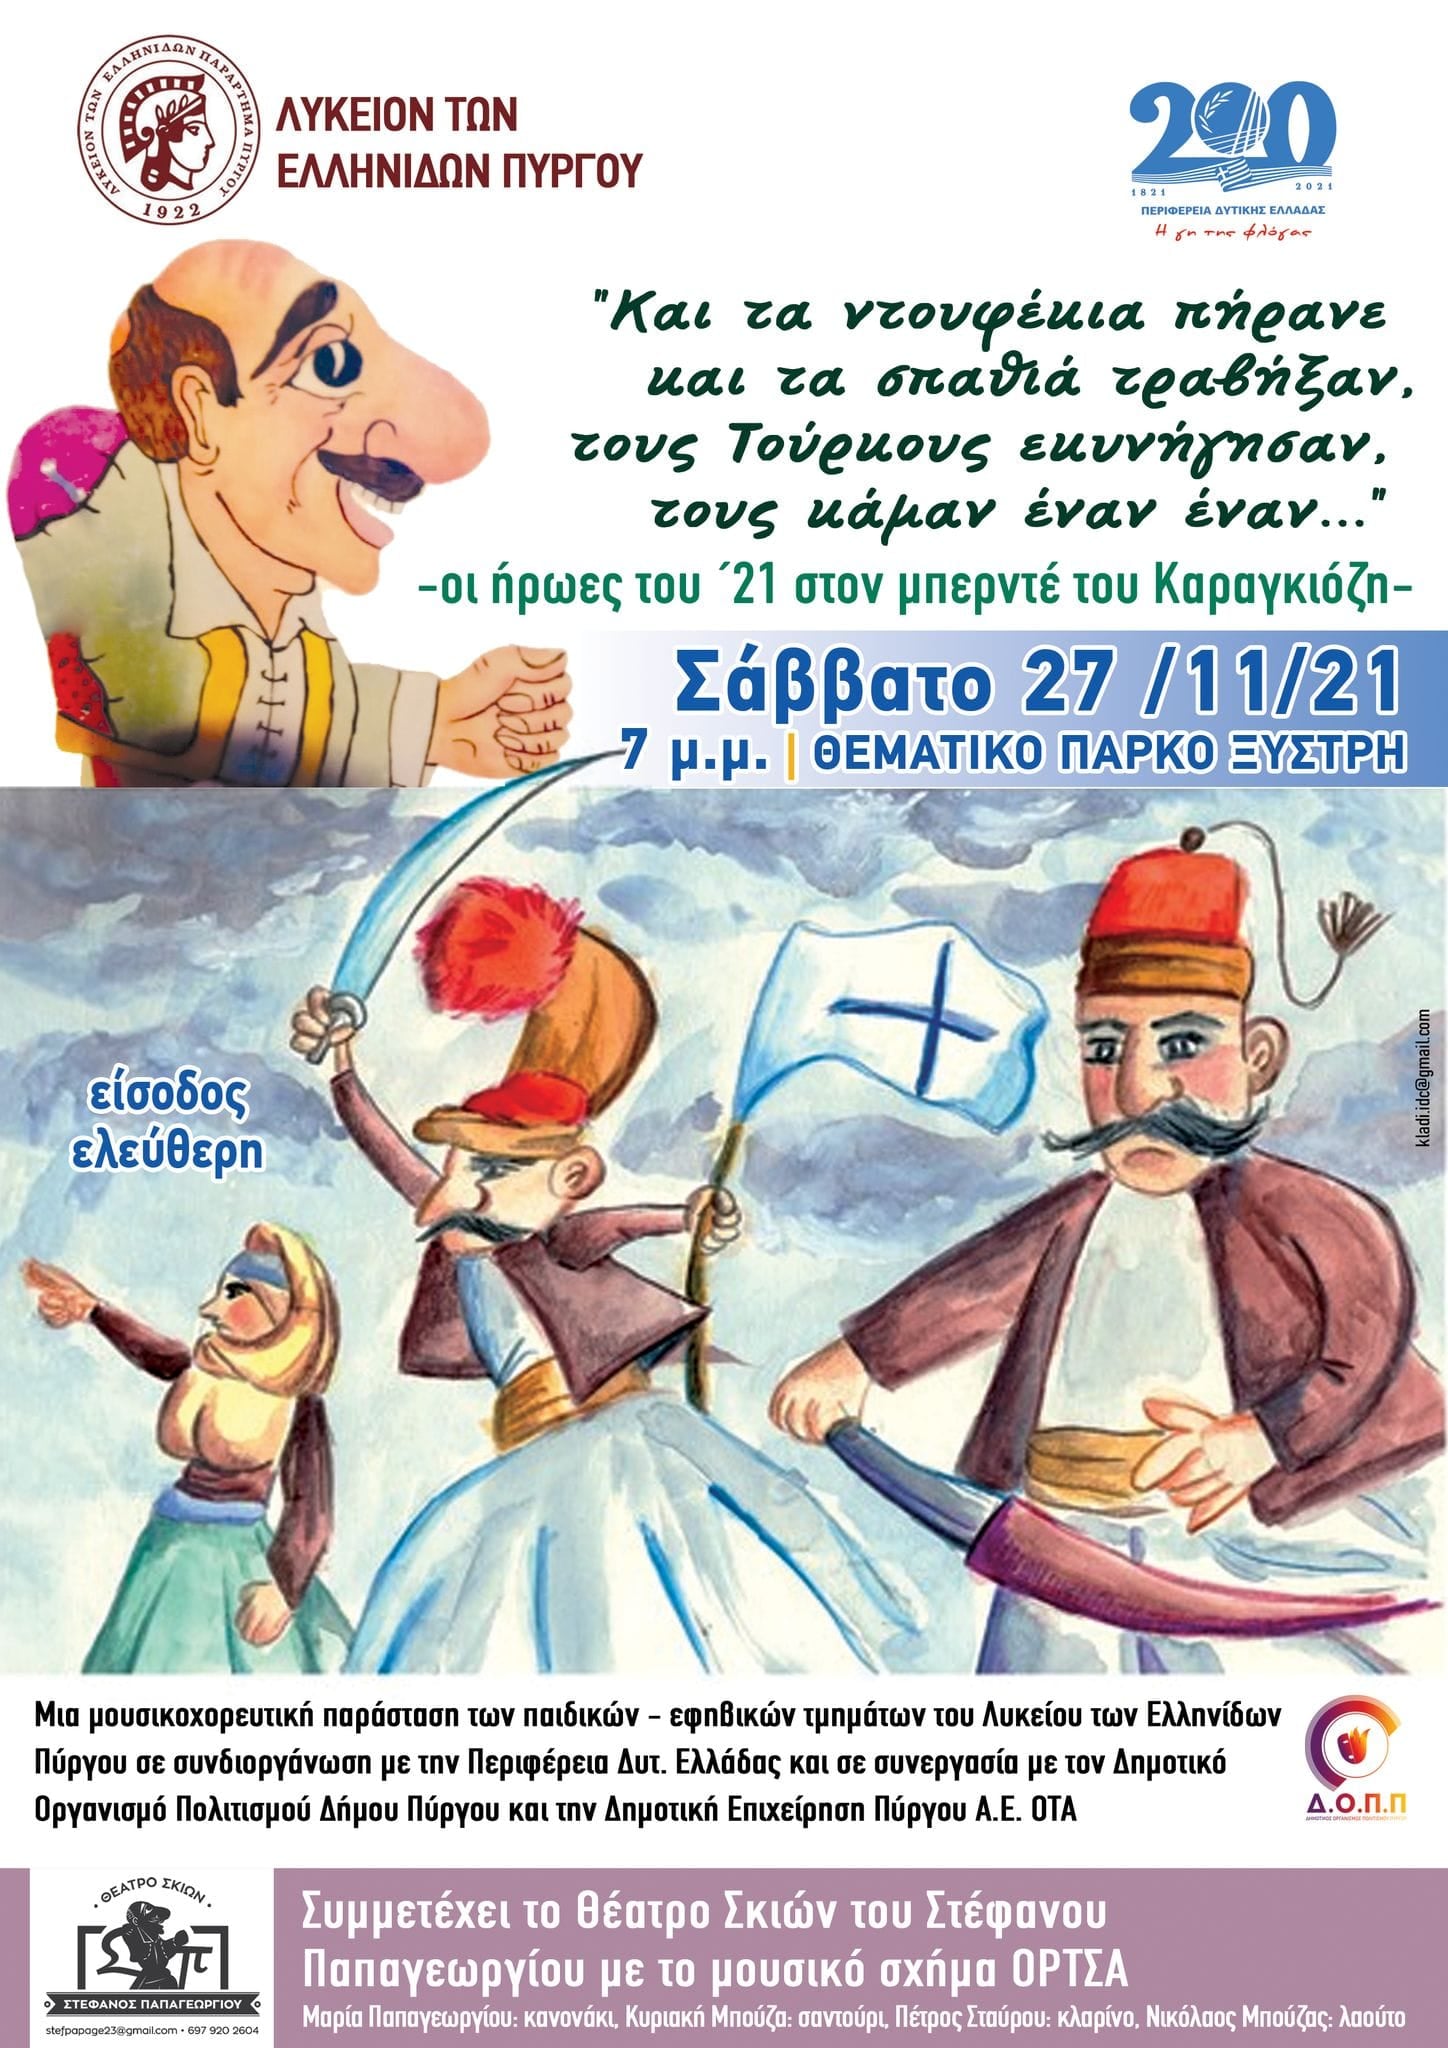 Λύκειο των Ελληνίδων Πύργου: Mουσικοχορευτική παράσταση το Σάββατο 27/11 στο Πάρκο Ξυστρή